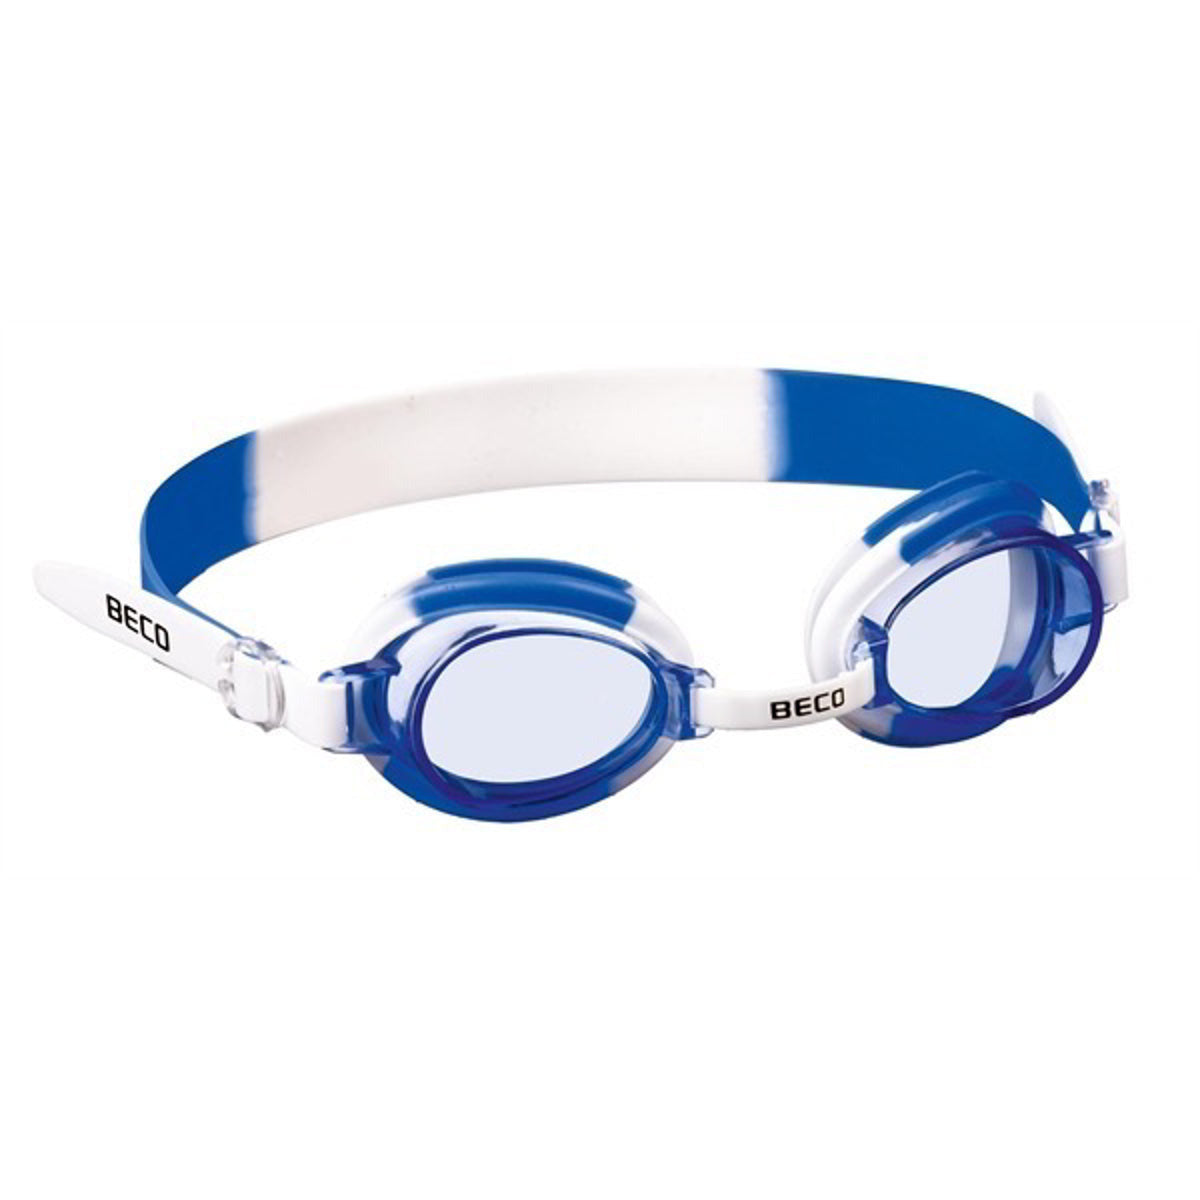 BECO "Halifax" svømmebriller til børn +8 år - Hvid/Blå